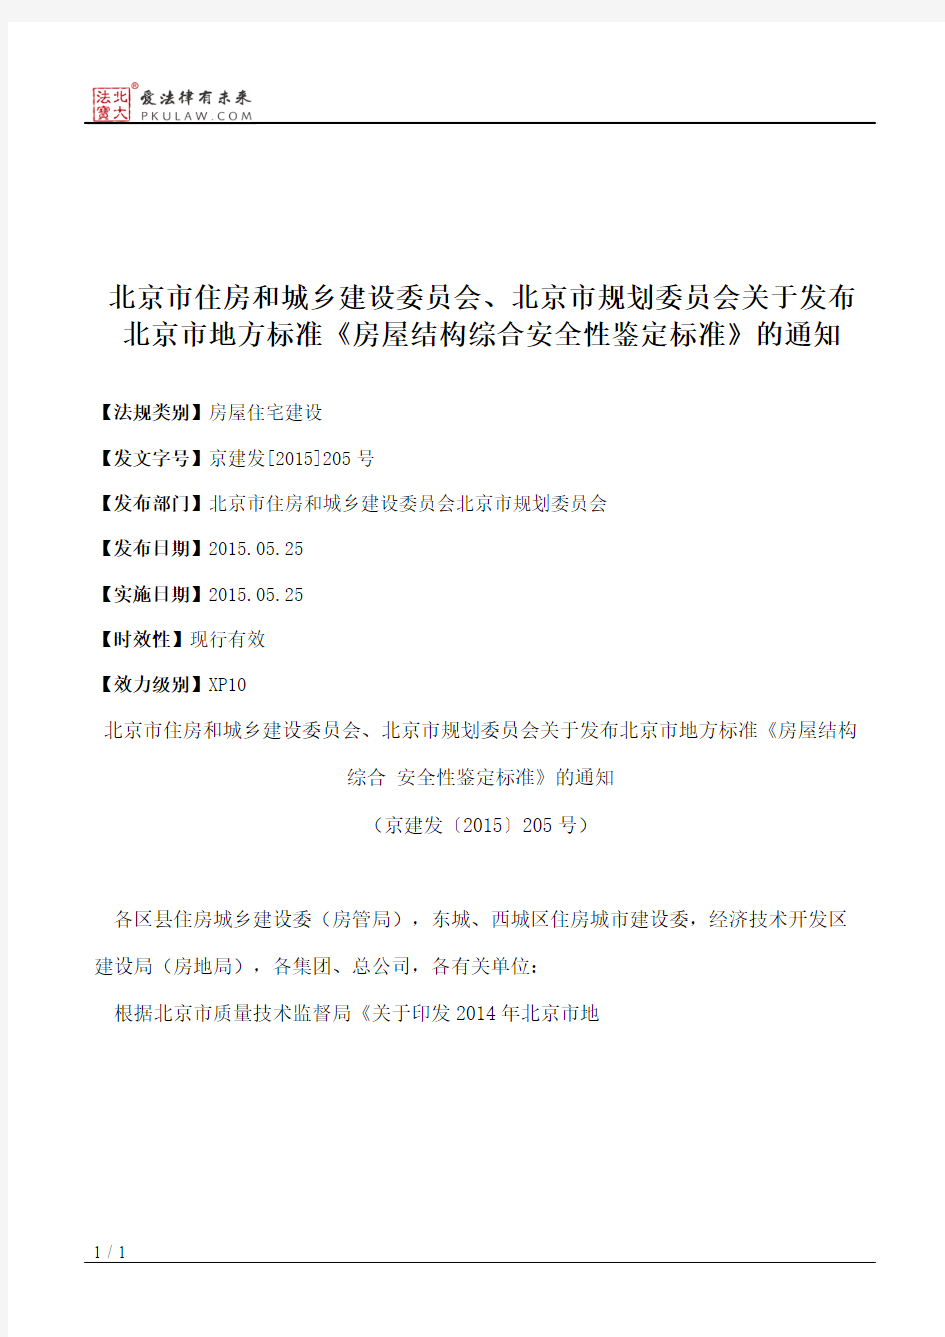 北京市住房和城乡建设委员会、北京市规划委员会关于发布北京市地